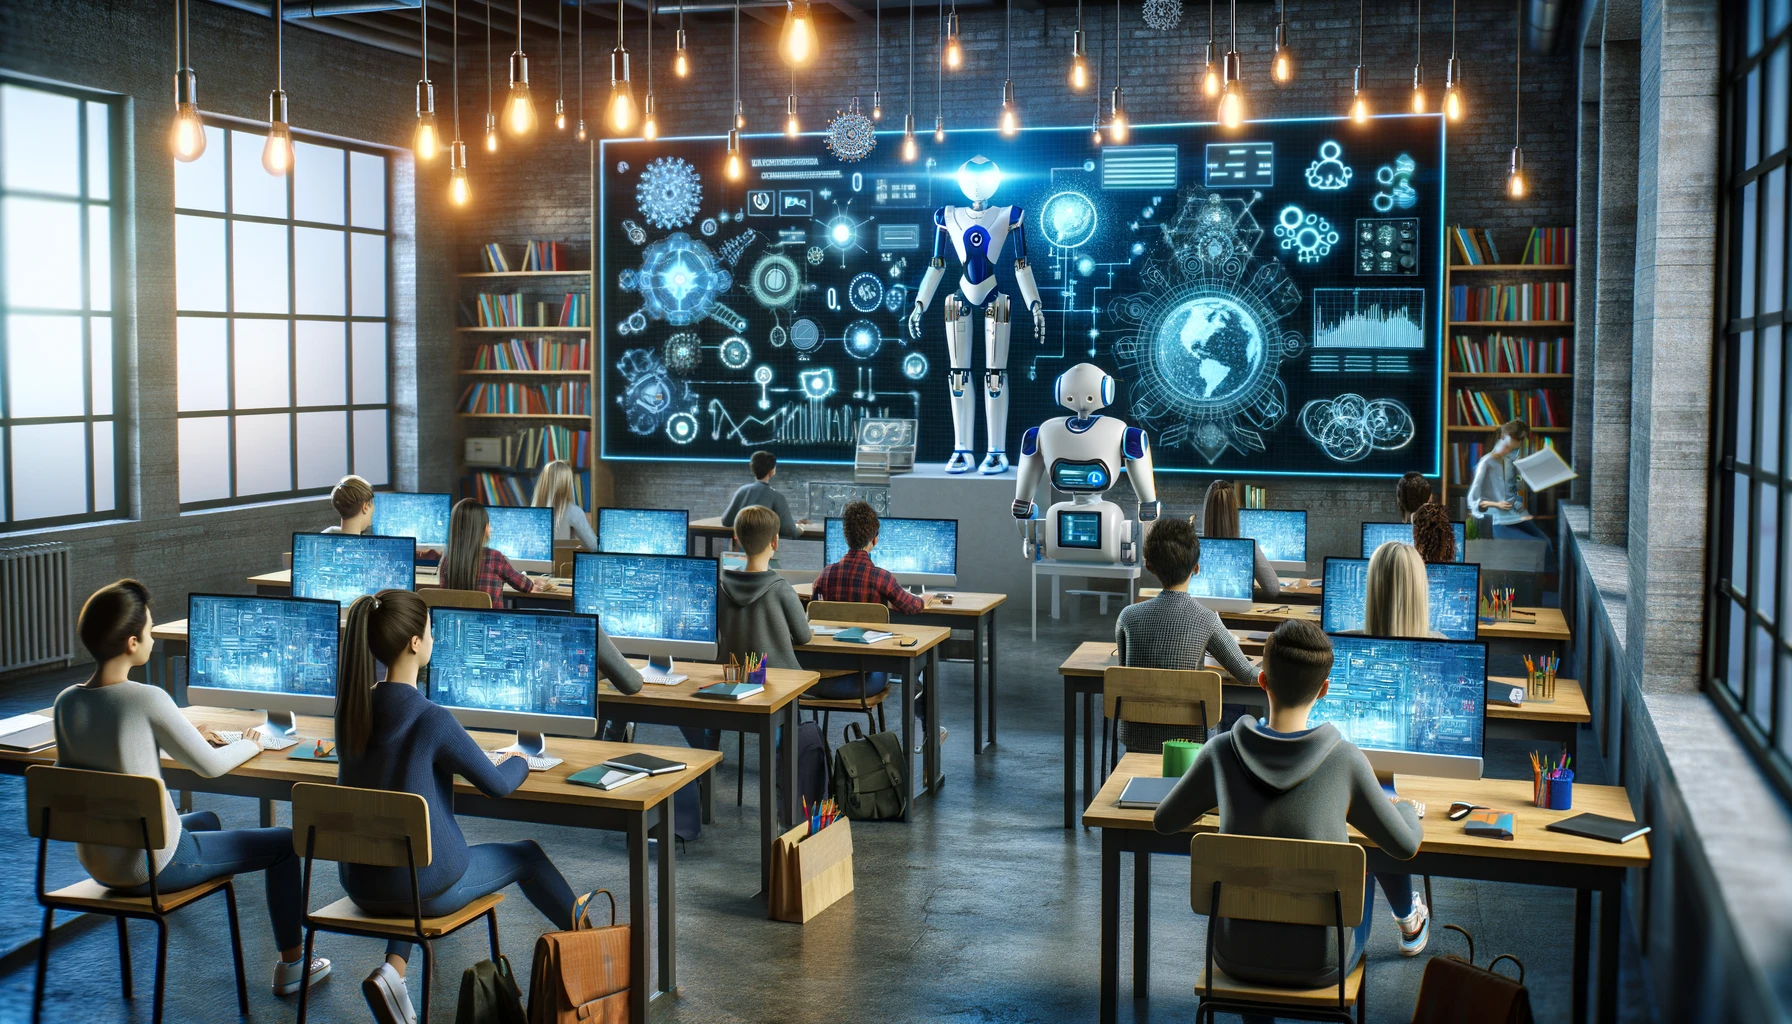 integracion de la inteligencia artificial en la educacion mostrando una aula moderna con estudiantes